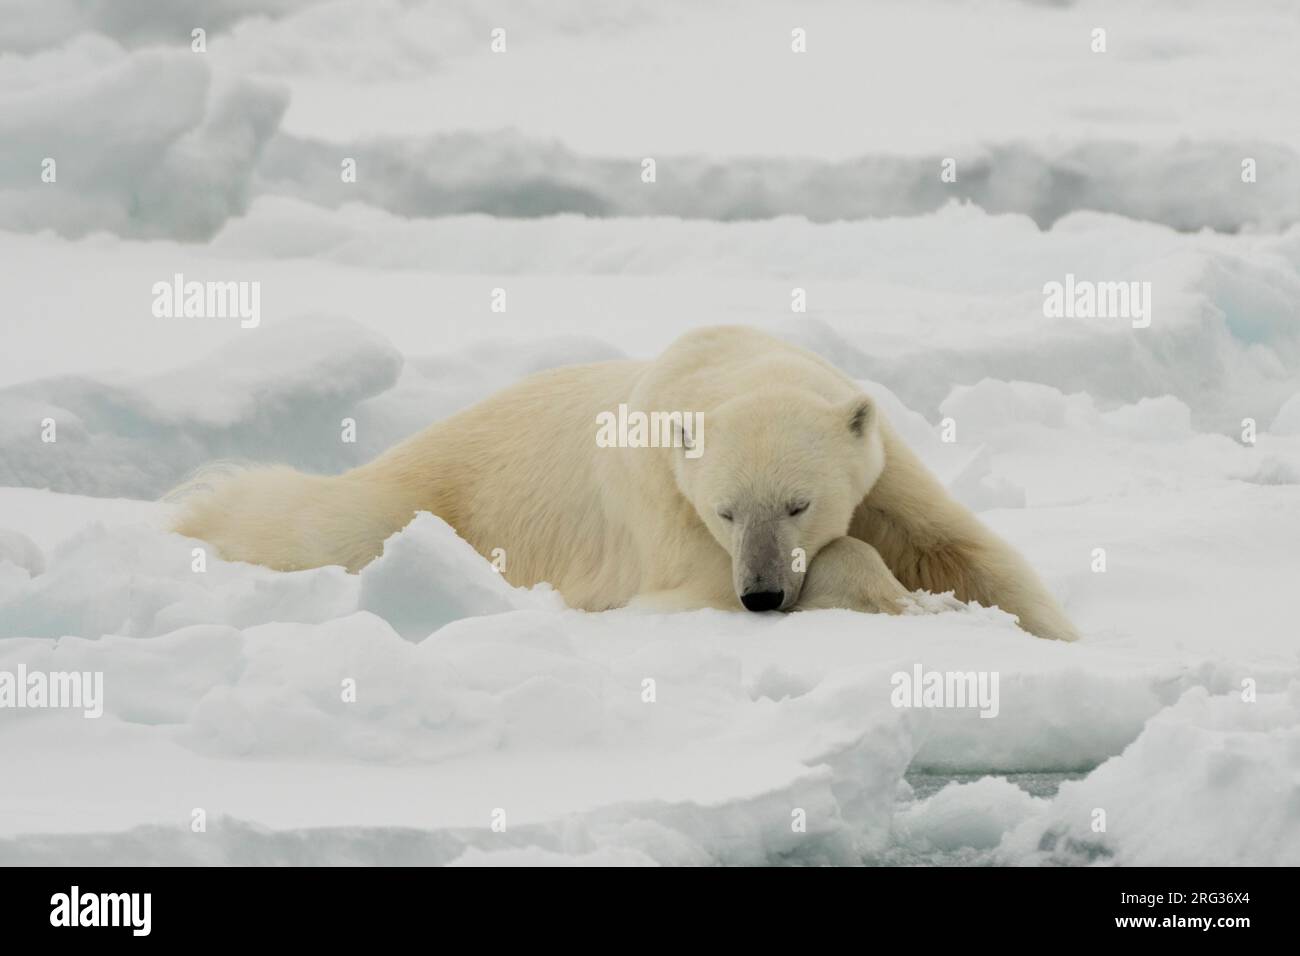 Un ours polaire au repos, Ursus maritimus.Calotte glaciaire polaire Nord, océan Arctique Banque D'Images